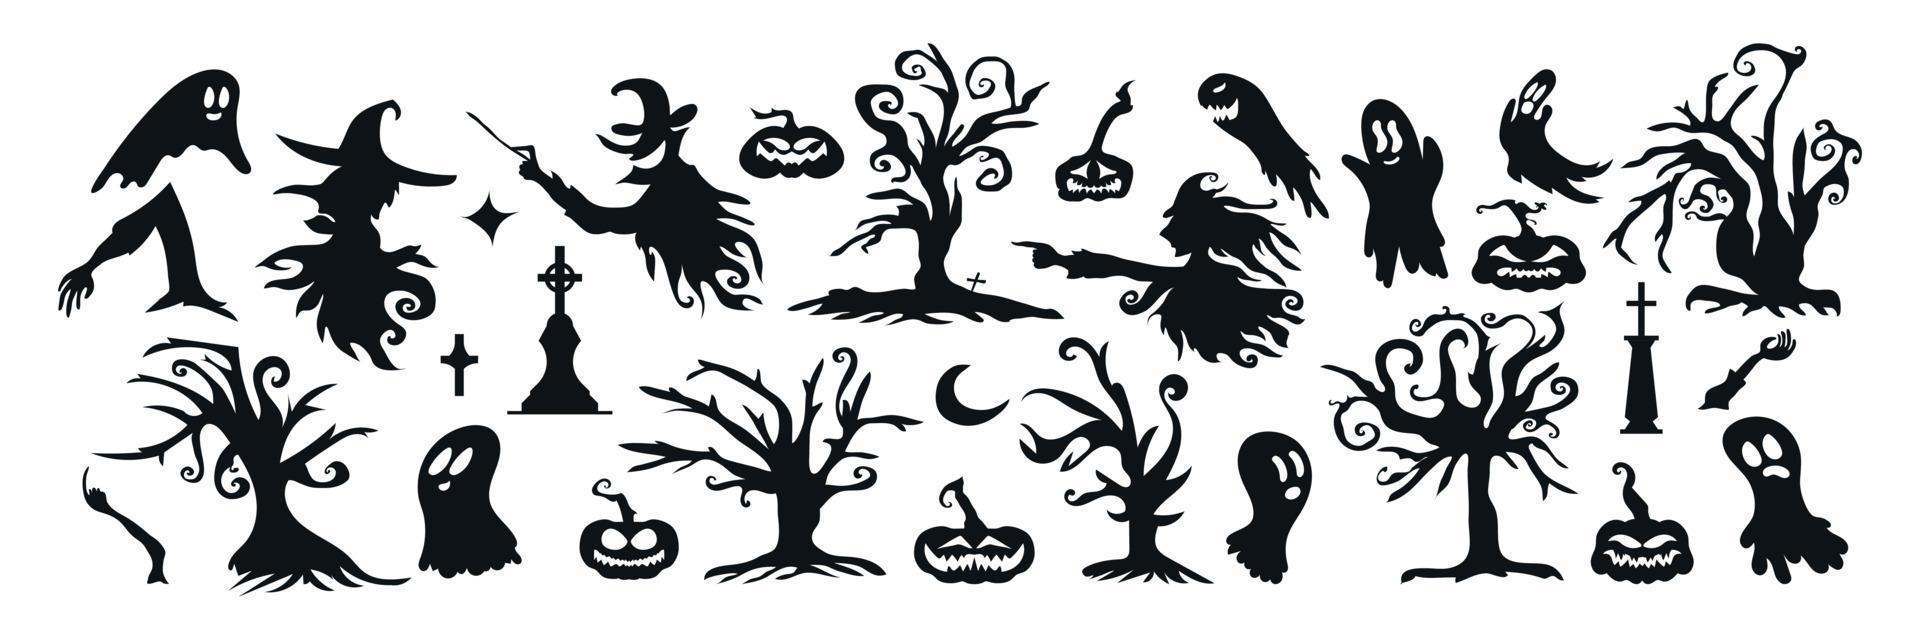 conjunto de icono y carácter de silueta de halloween. ilustración vectorial de halloween aislada sobre fondo blanco vector